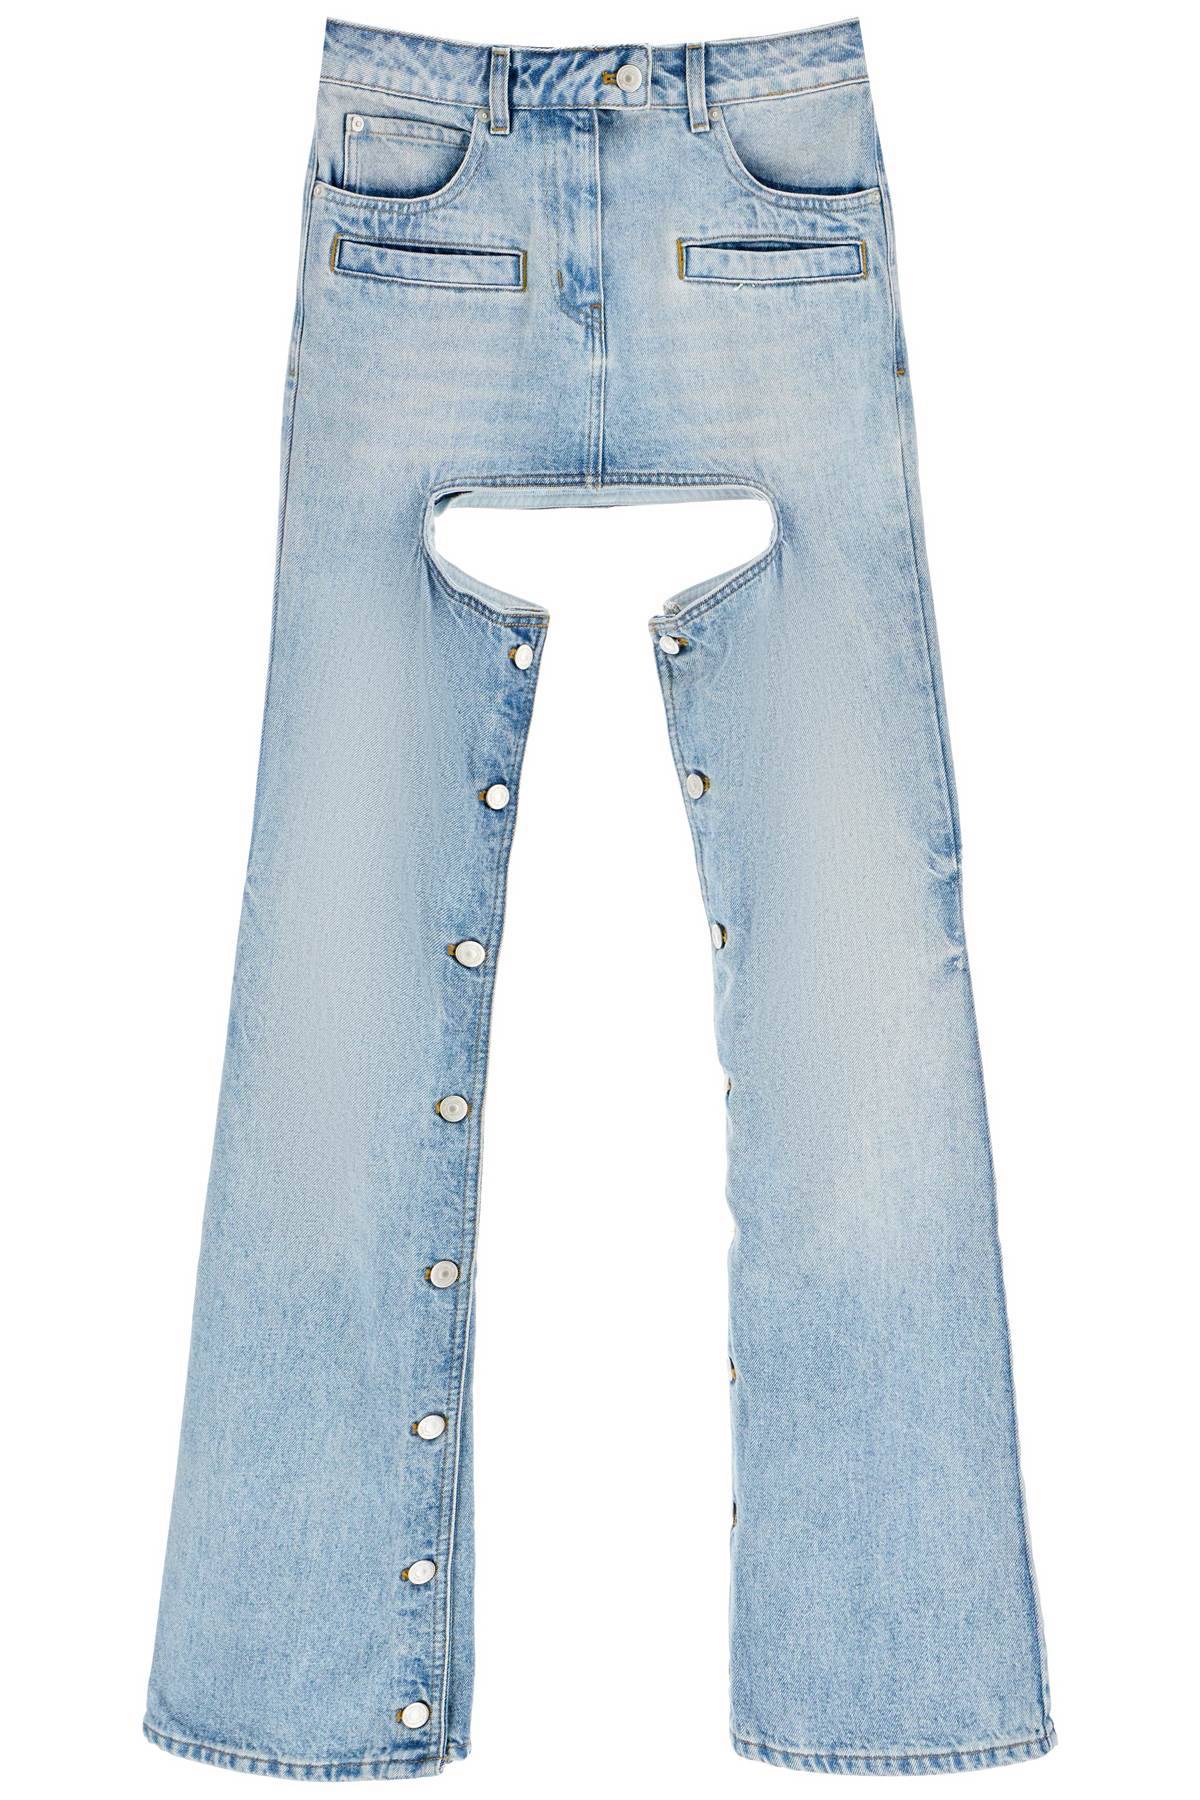 Courrèges COURREGES 'chaps' jeans with cut-out